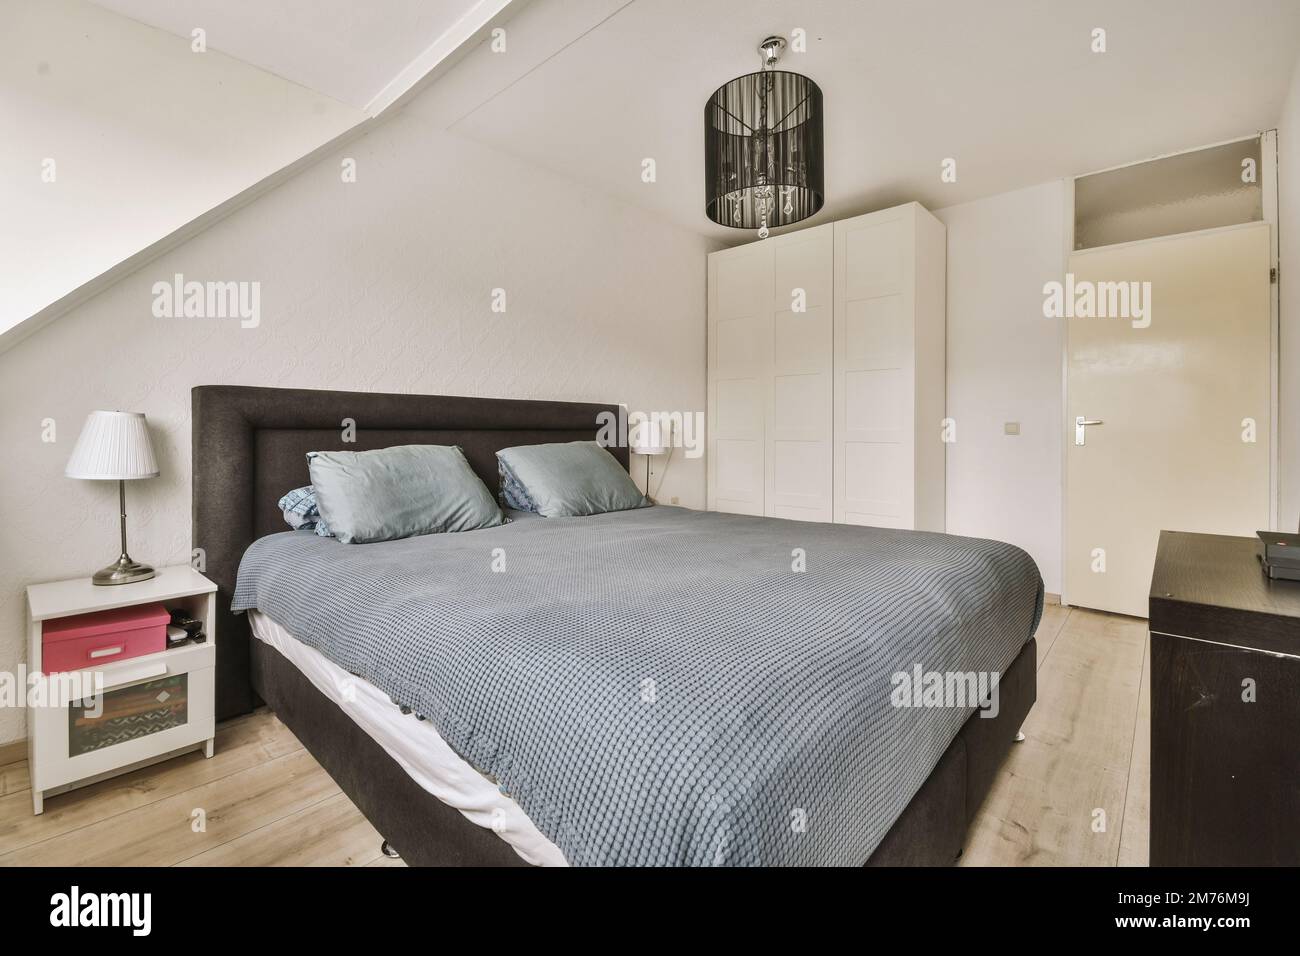 Ein Schlafzimmer mit einem Bett, Kommode und Spiegel an der Wand vor dem  Bett, es gibt eine Lampe über dem Bett Stockfotografie - Alamy